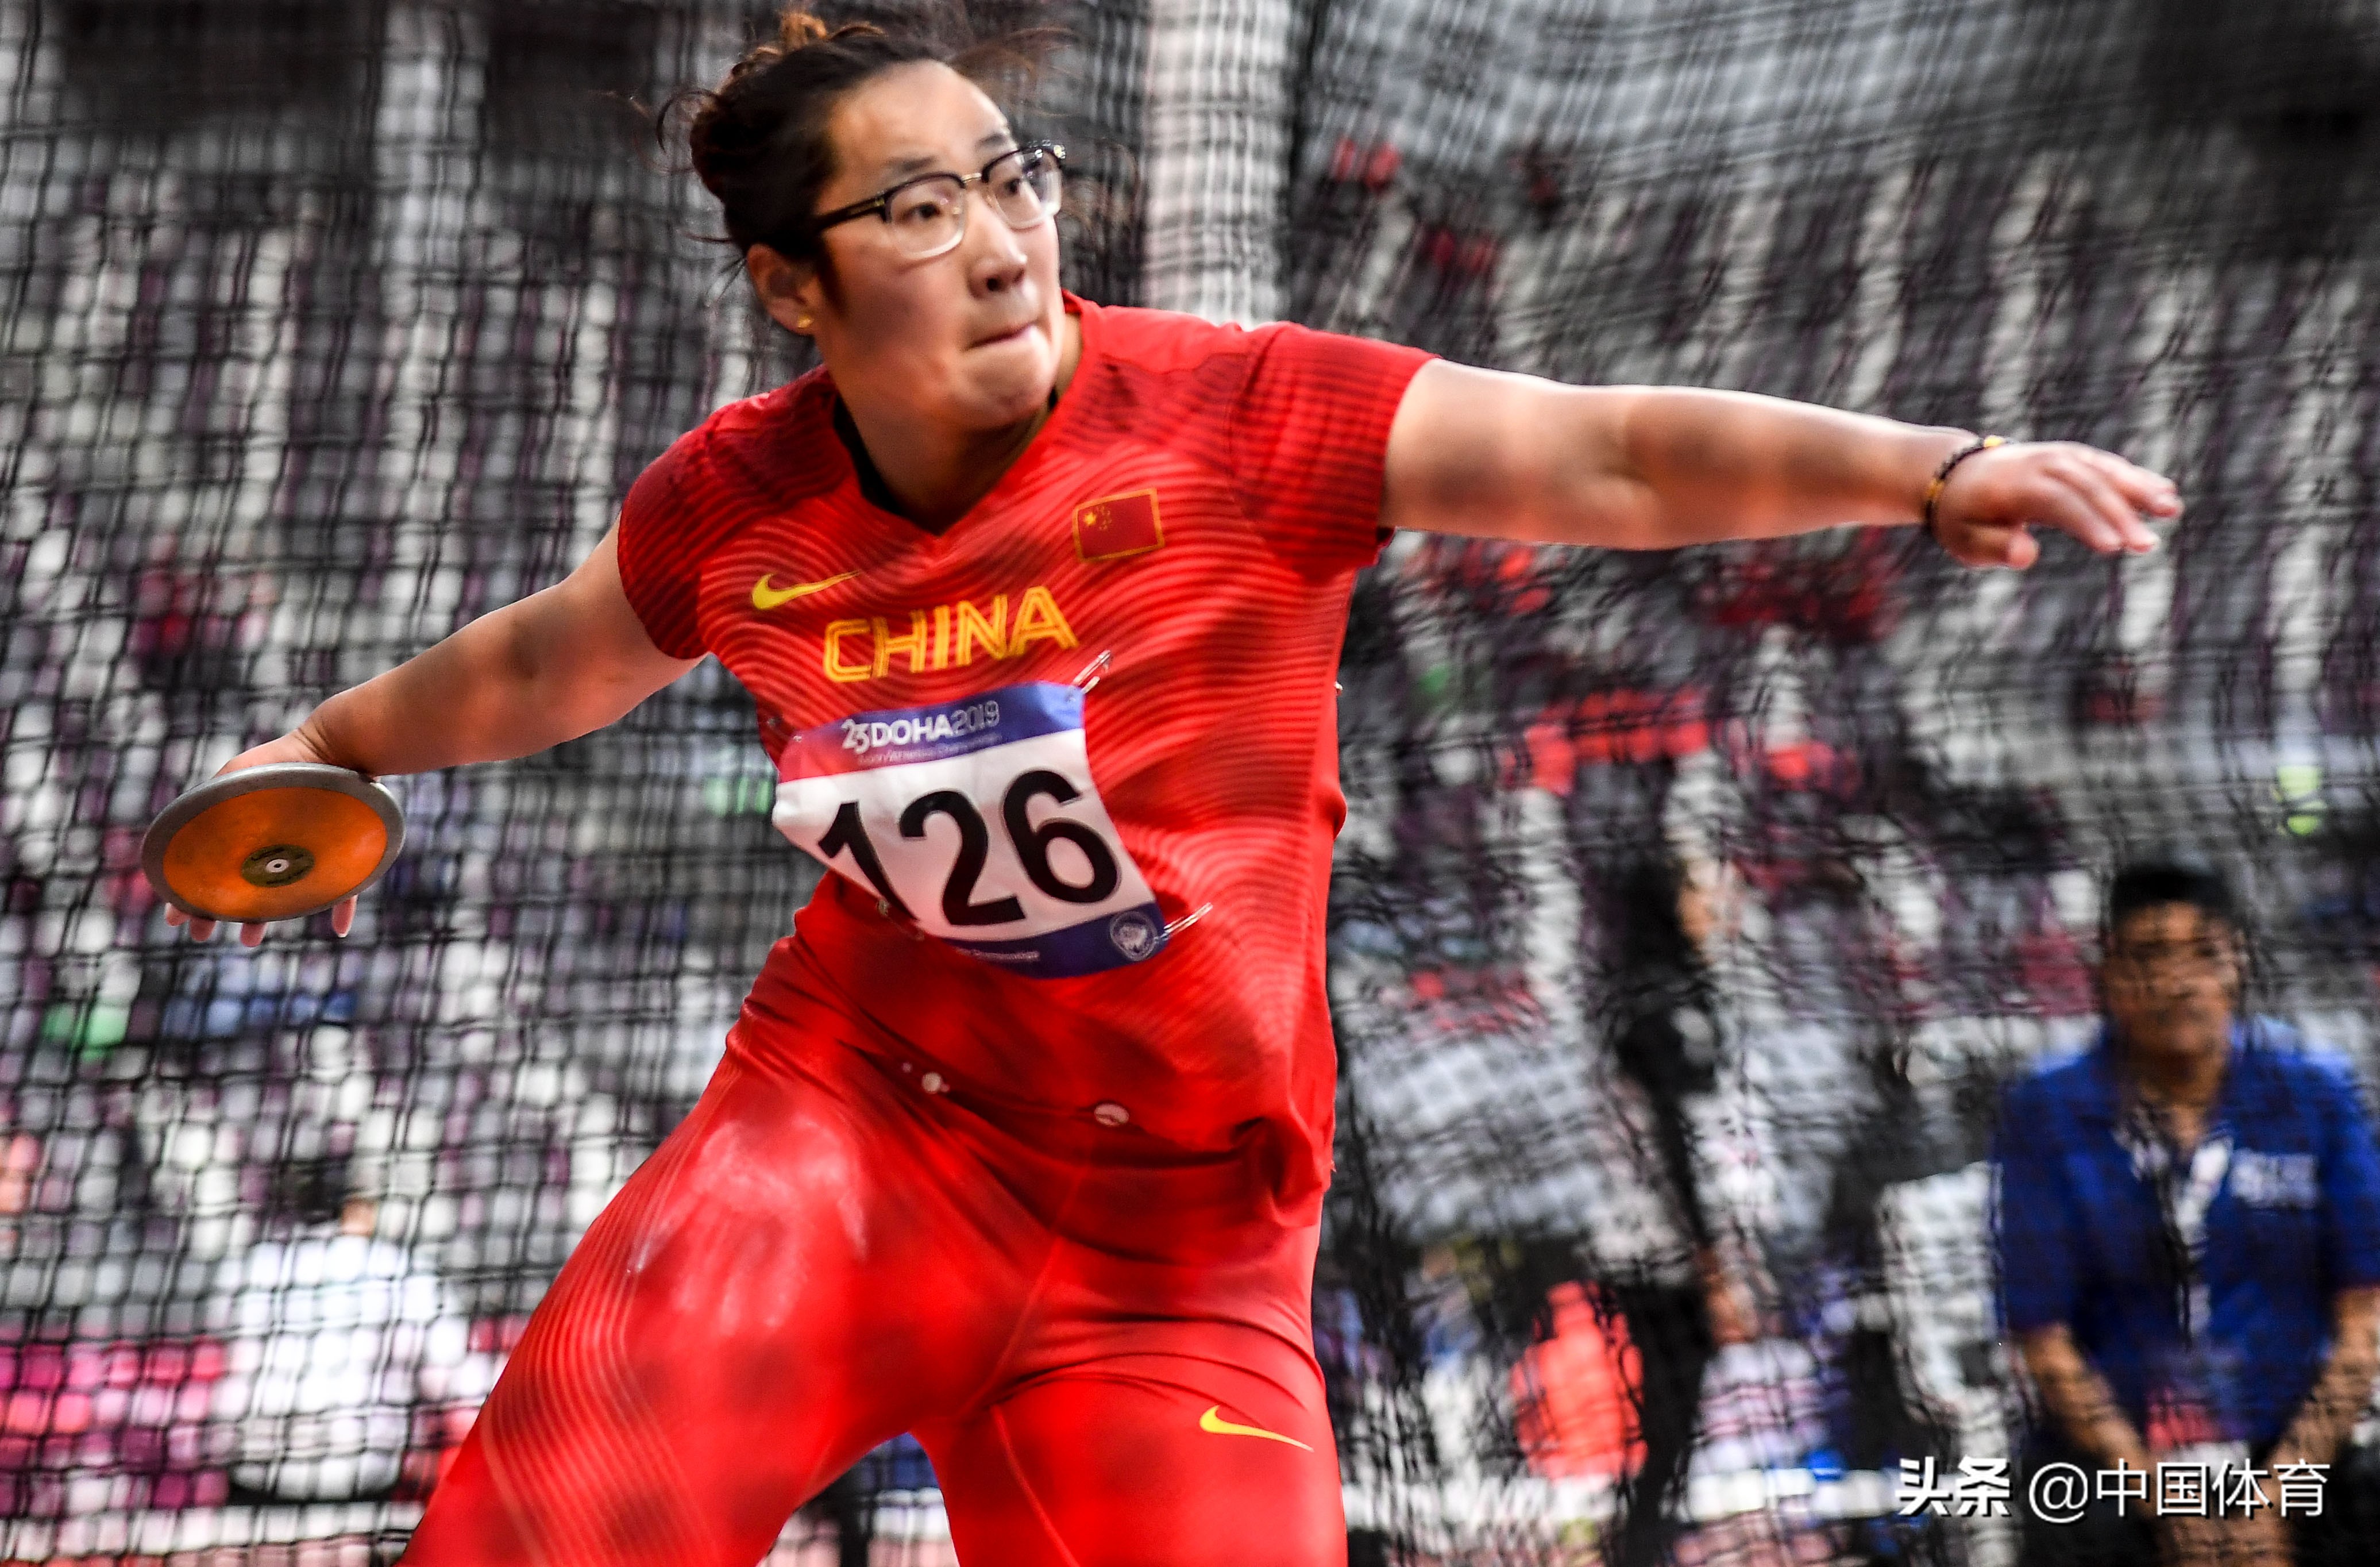 在女子铁饼决赛中,中国选手冯彬以65米36的成绩夺得冠军并打破赛会